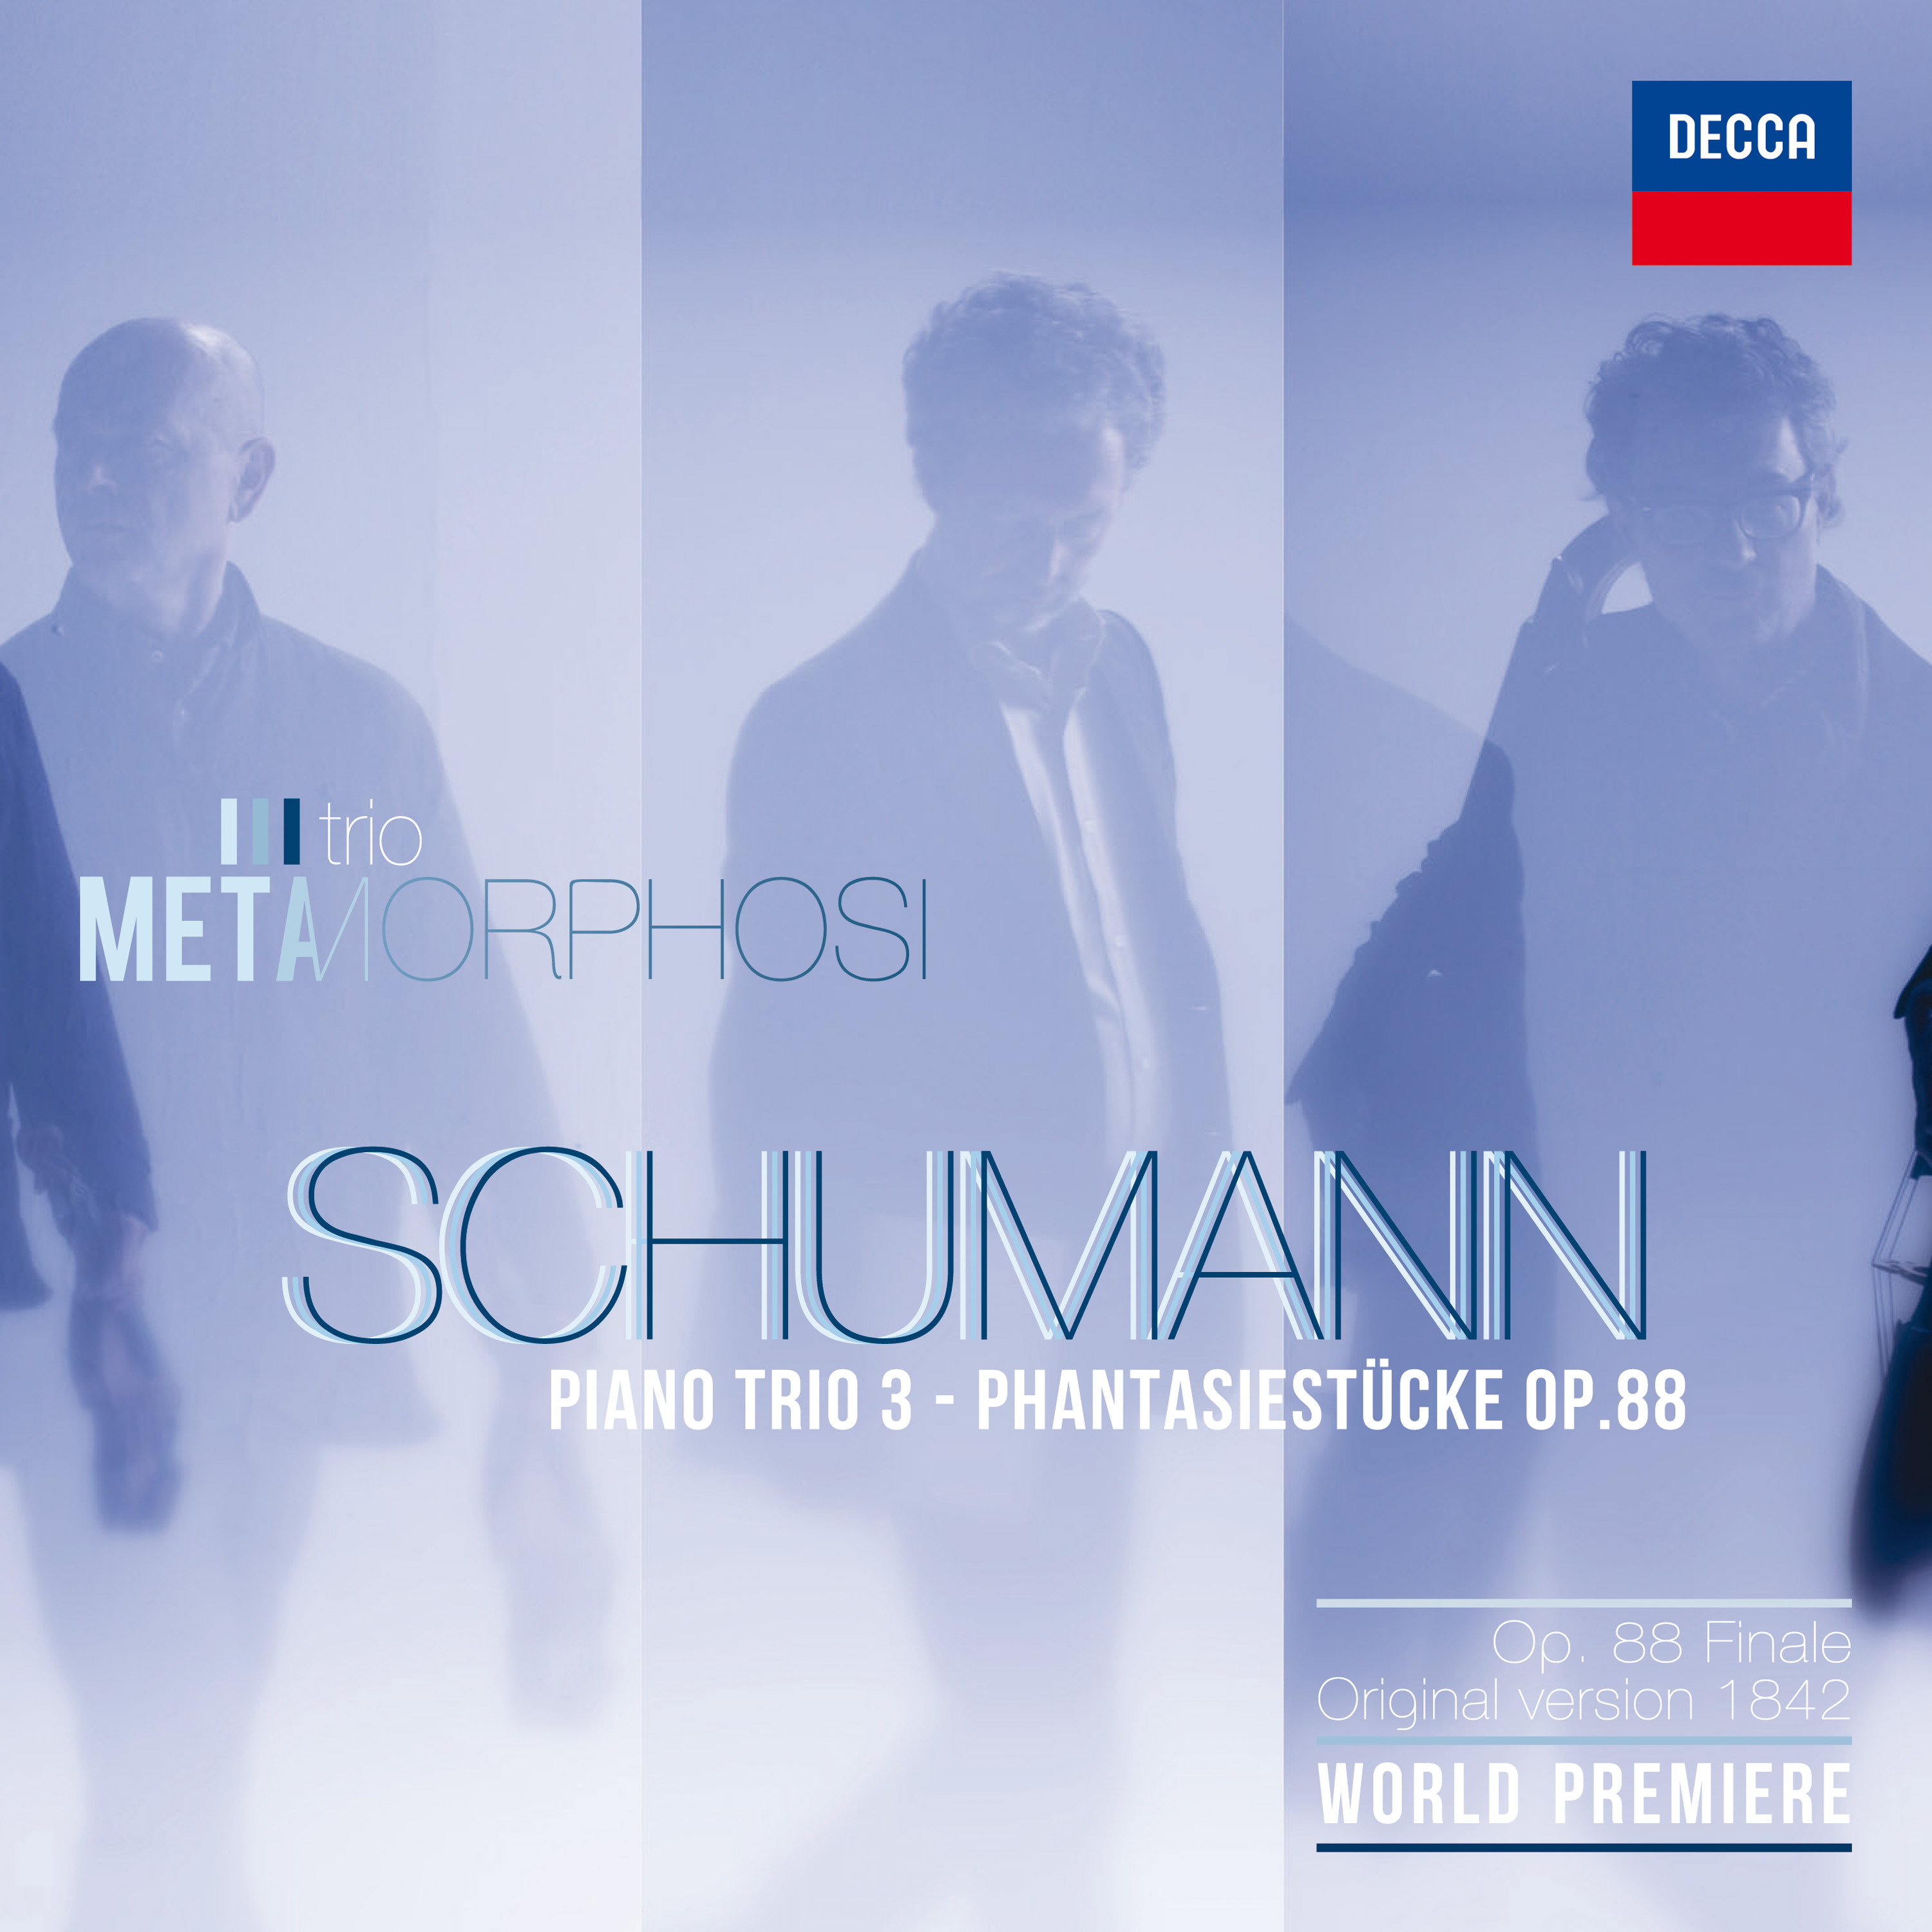 Trio Metamorphosi: 5 stelle da Musica di febbraio per l'incisione del terzo trio di Schumann